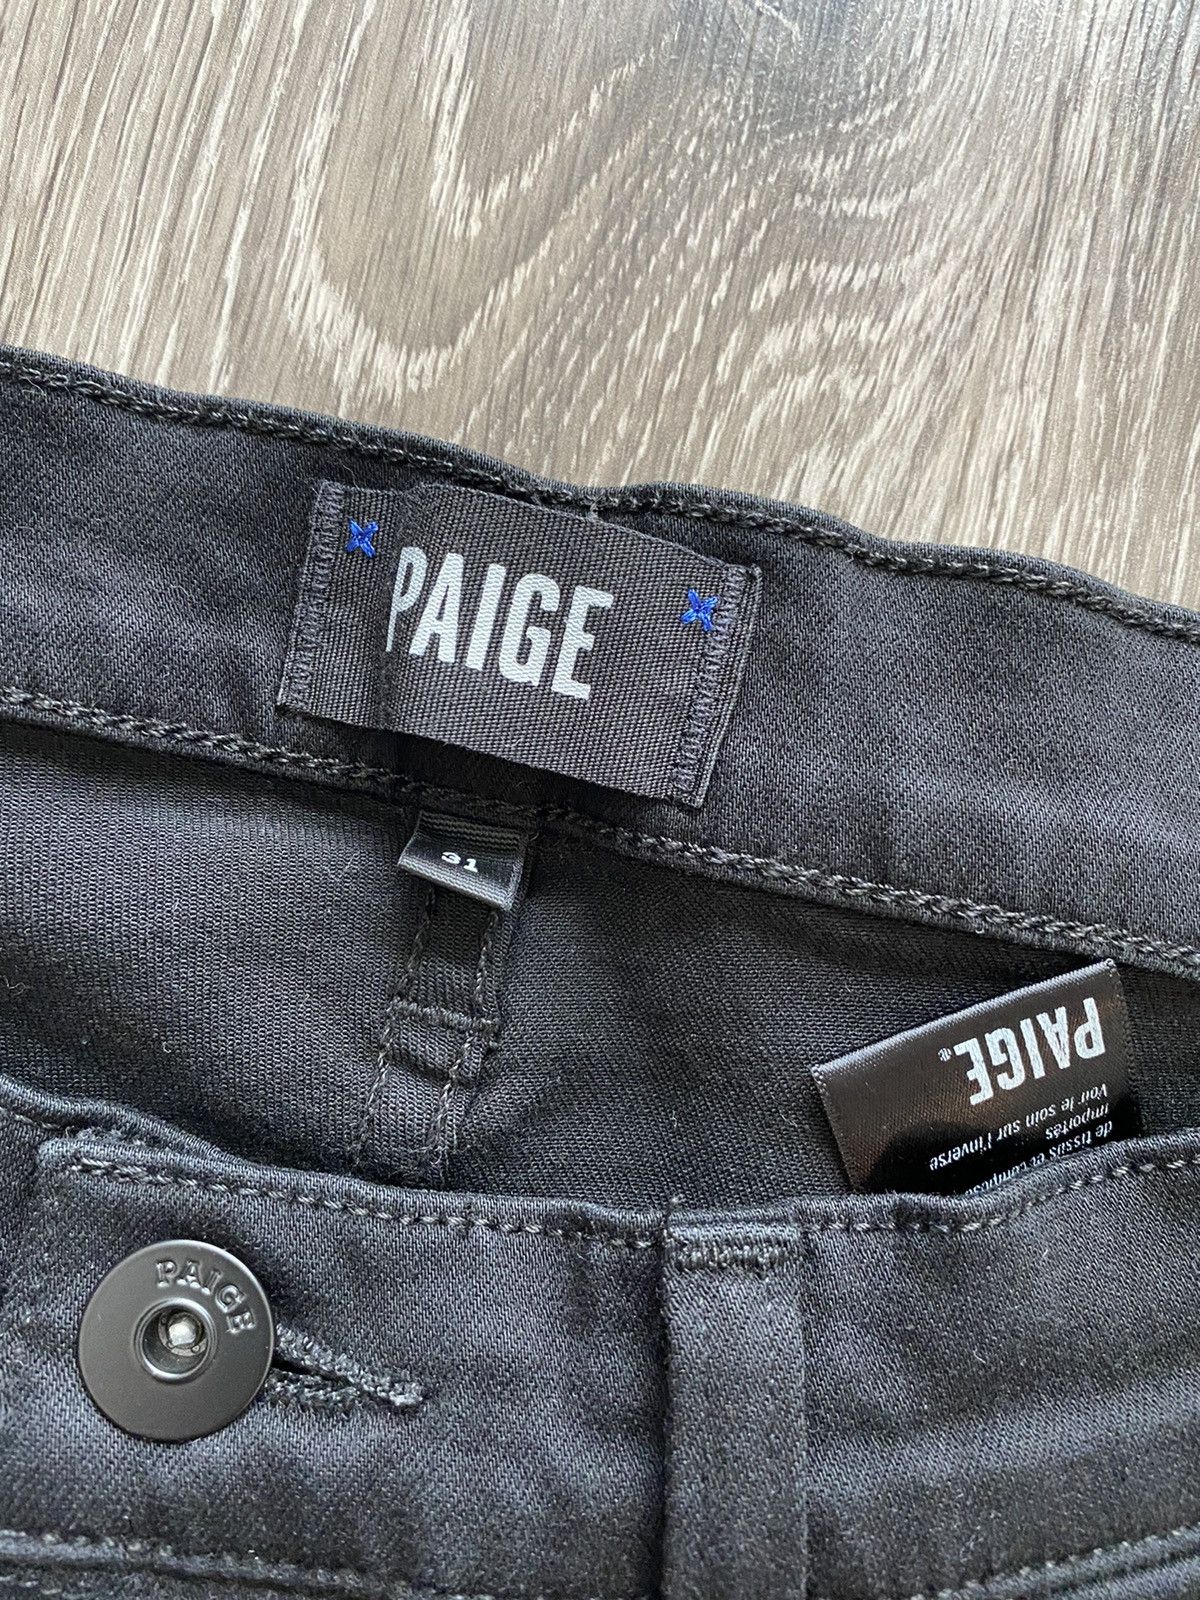 Paige Black Paige Denim Size US 31 - 2 Preview